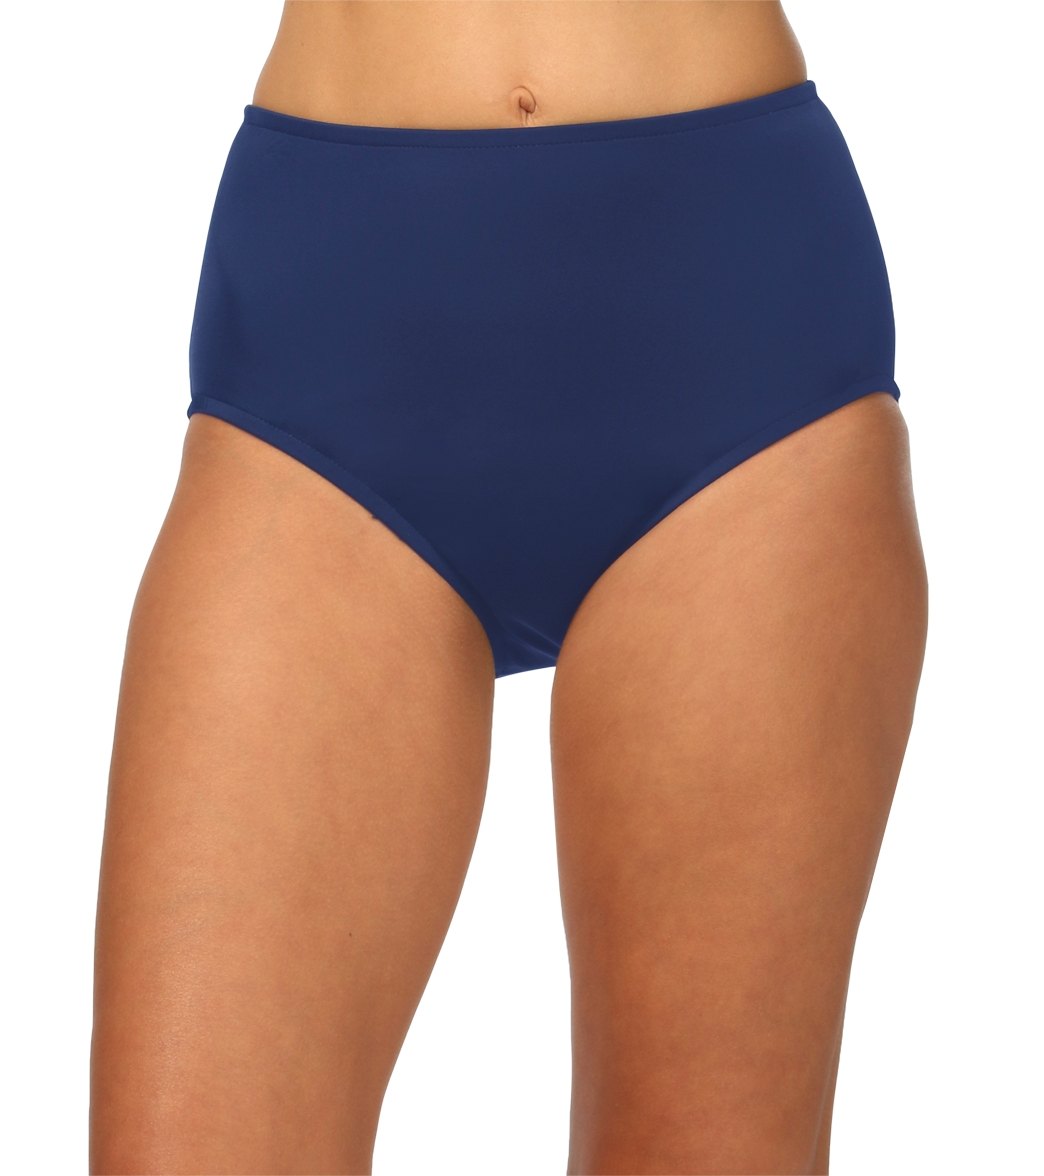 Maxine Solid Full Bikini Bottom - Navy 8 Elastane/Lycra®/Nylon - Swimoutlet.com